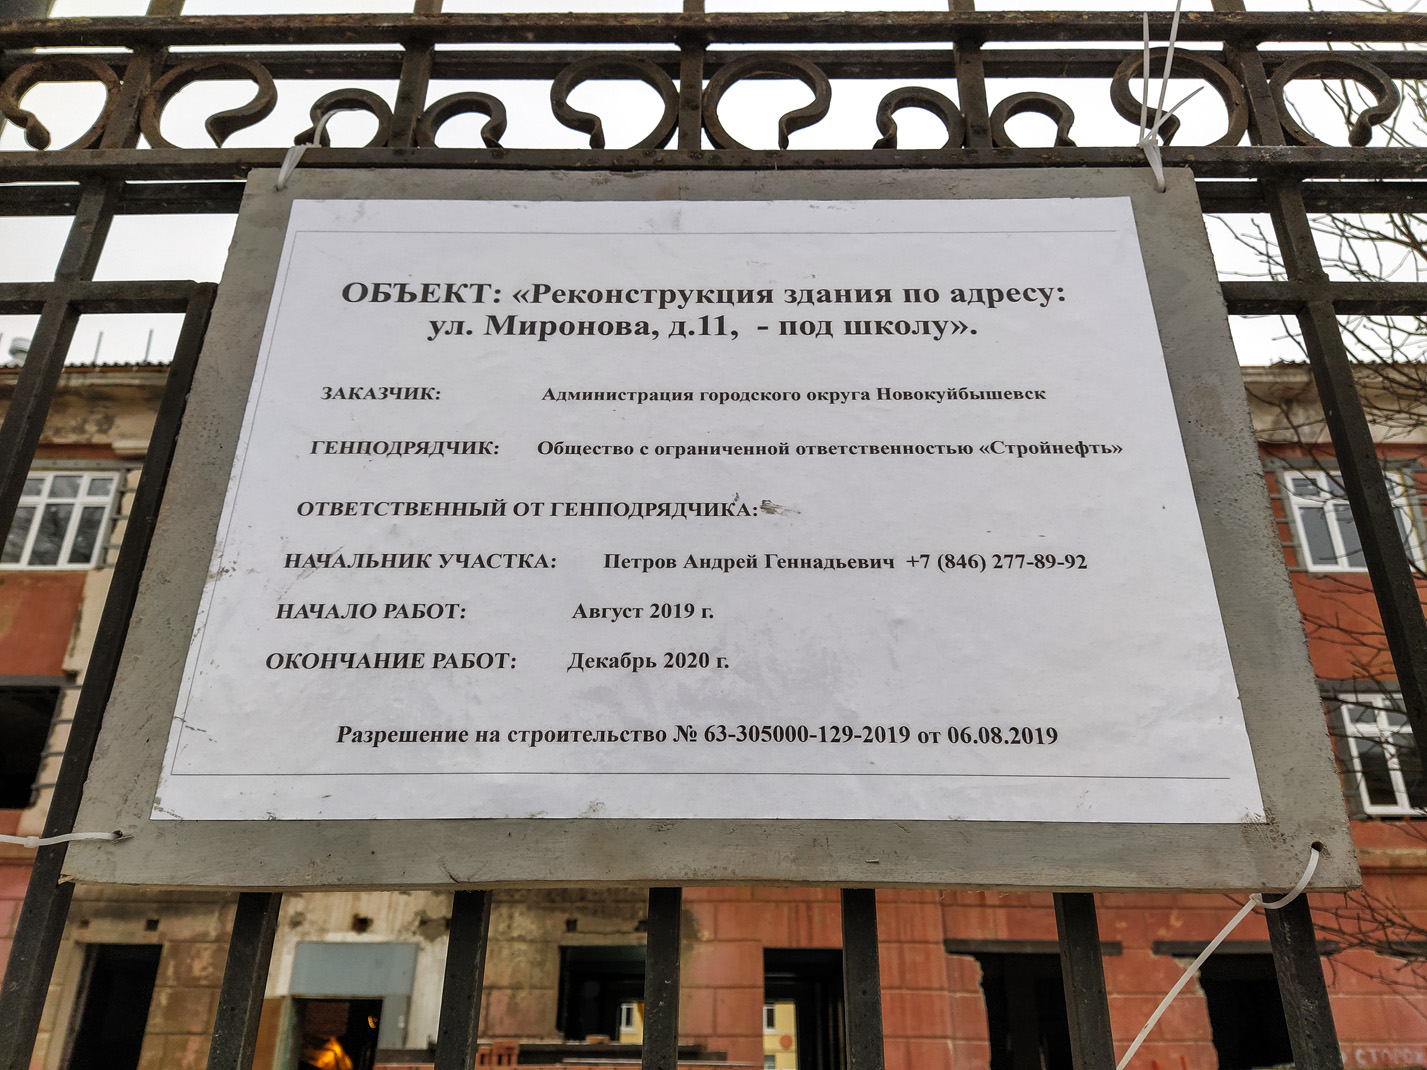 Novokuybyshevsk, Улица Миронова, 11. Прочие документы